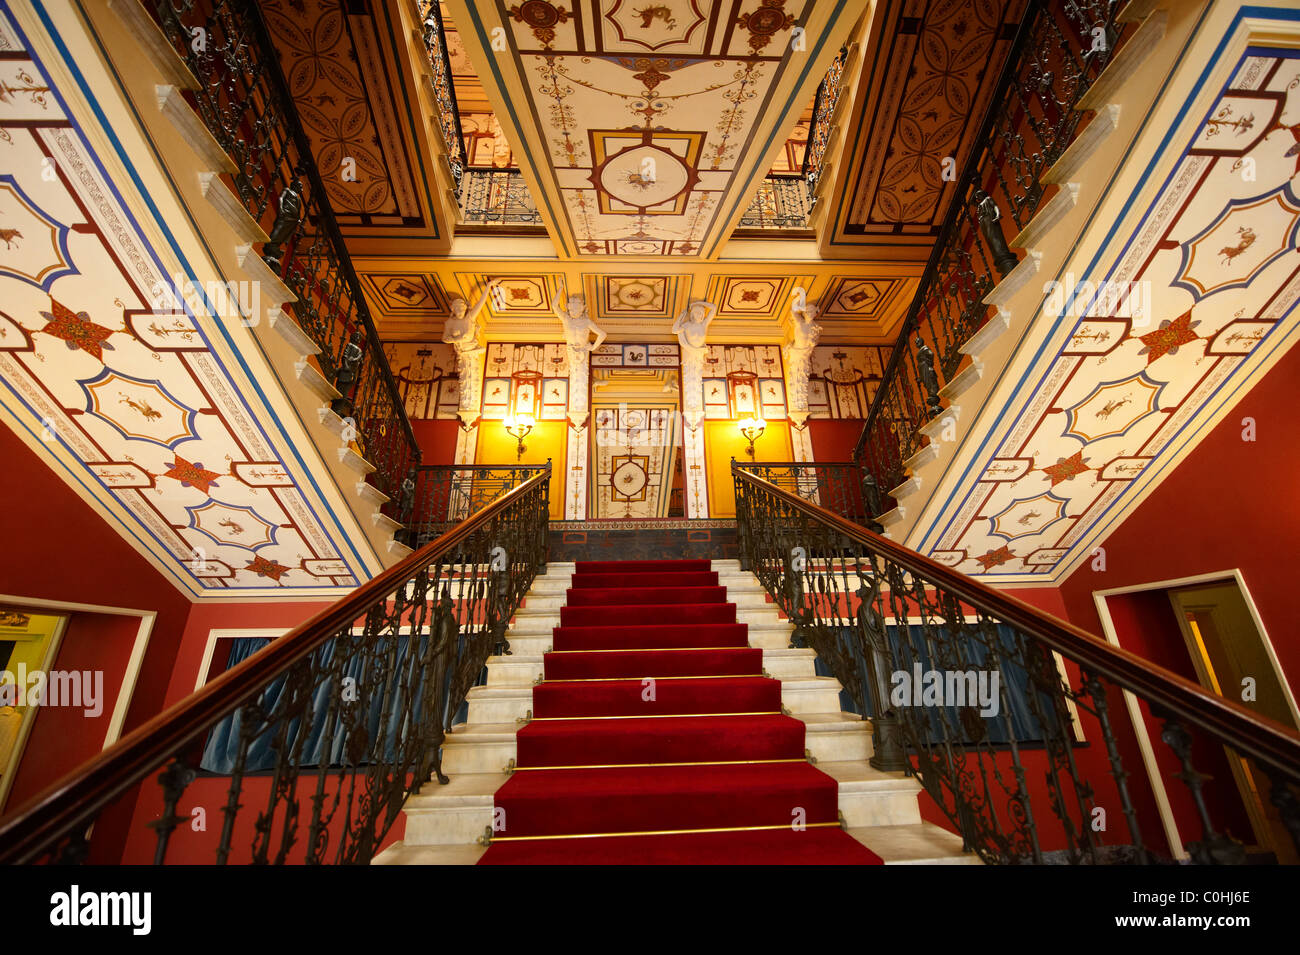 Escalier de l'Achilleion [ Achille, Αχίλλειο [ 1890 ] Palace Construit par Elizabeth [ Sissi ] Emperess de l'Autriche Banque D'Images